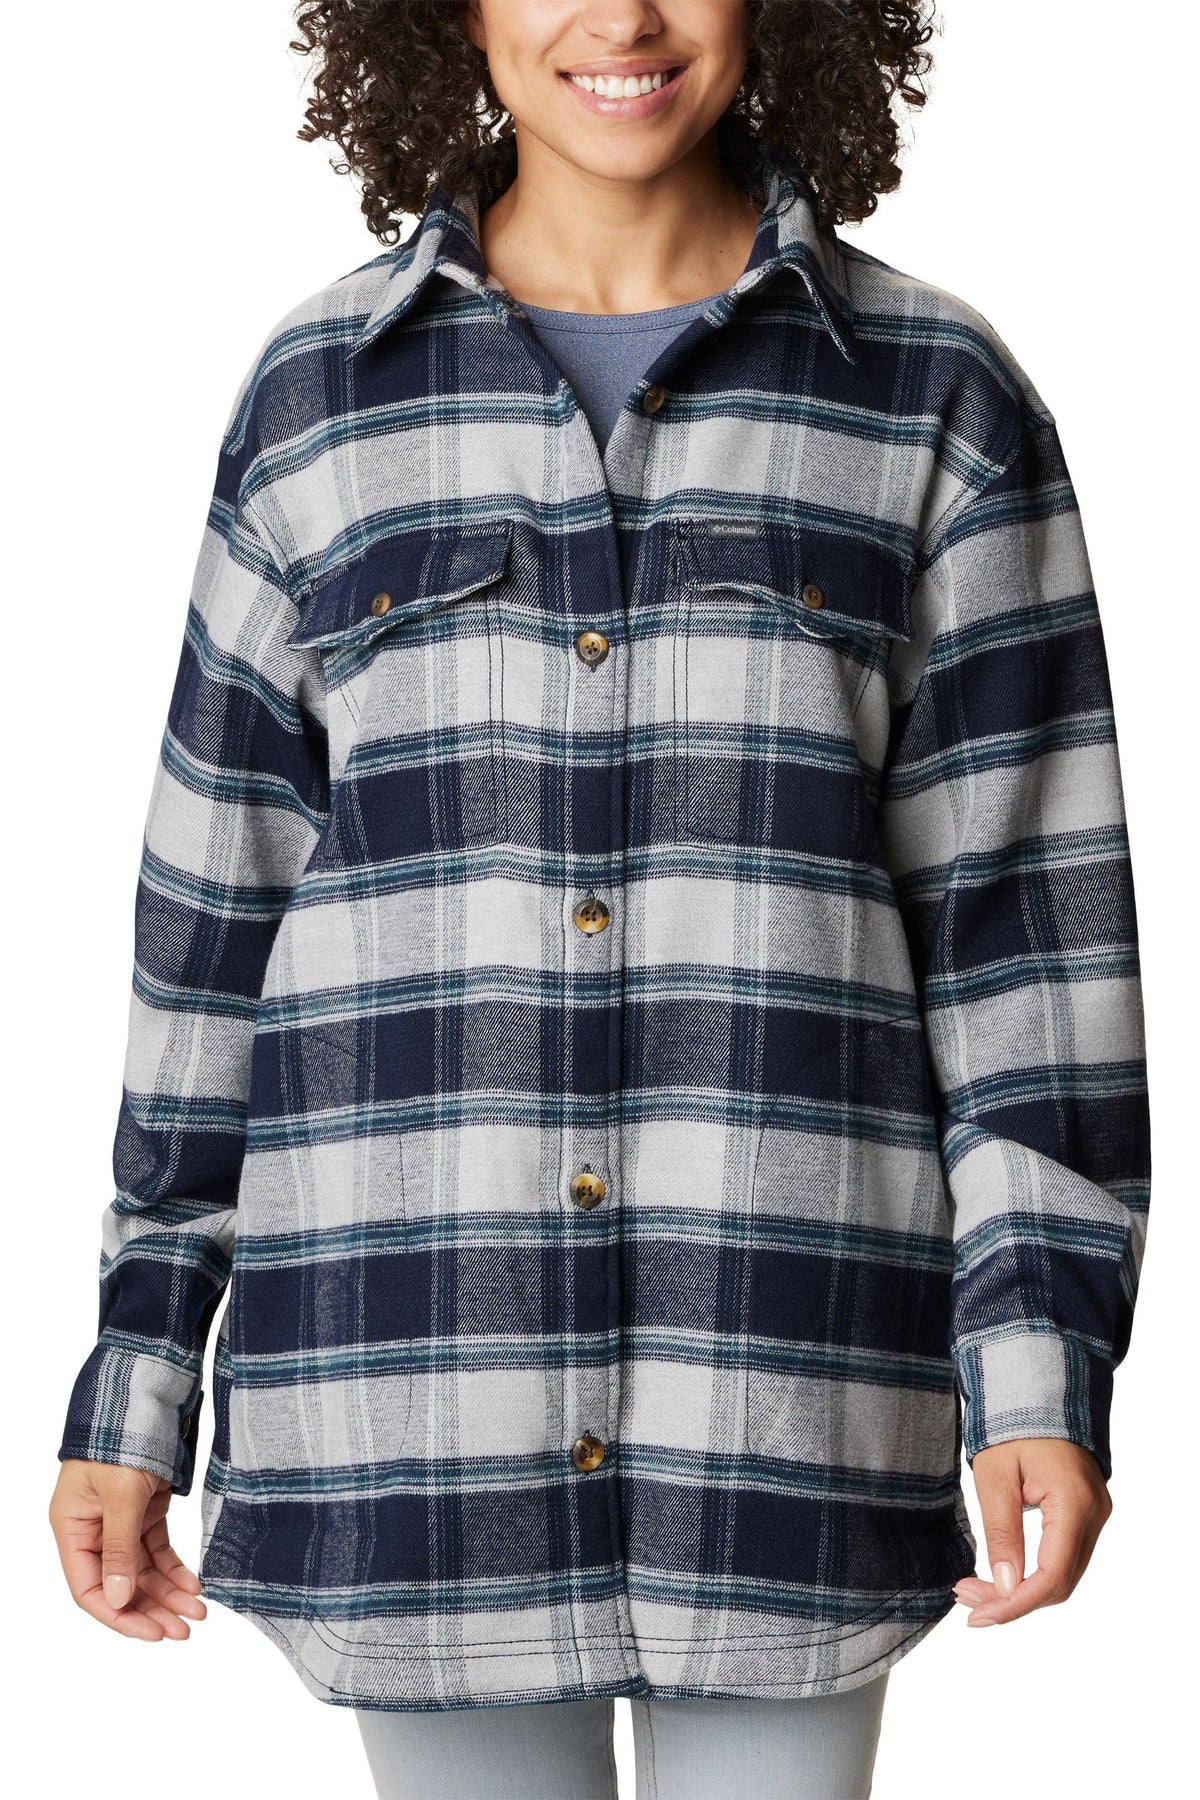 Columbia Calico Basin Shirt Jacket - Style 2052221472, front